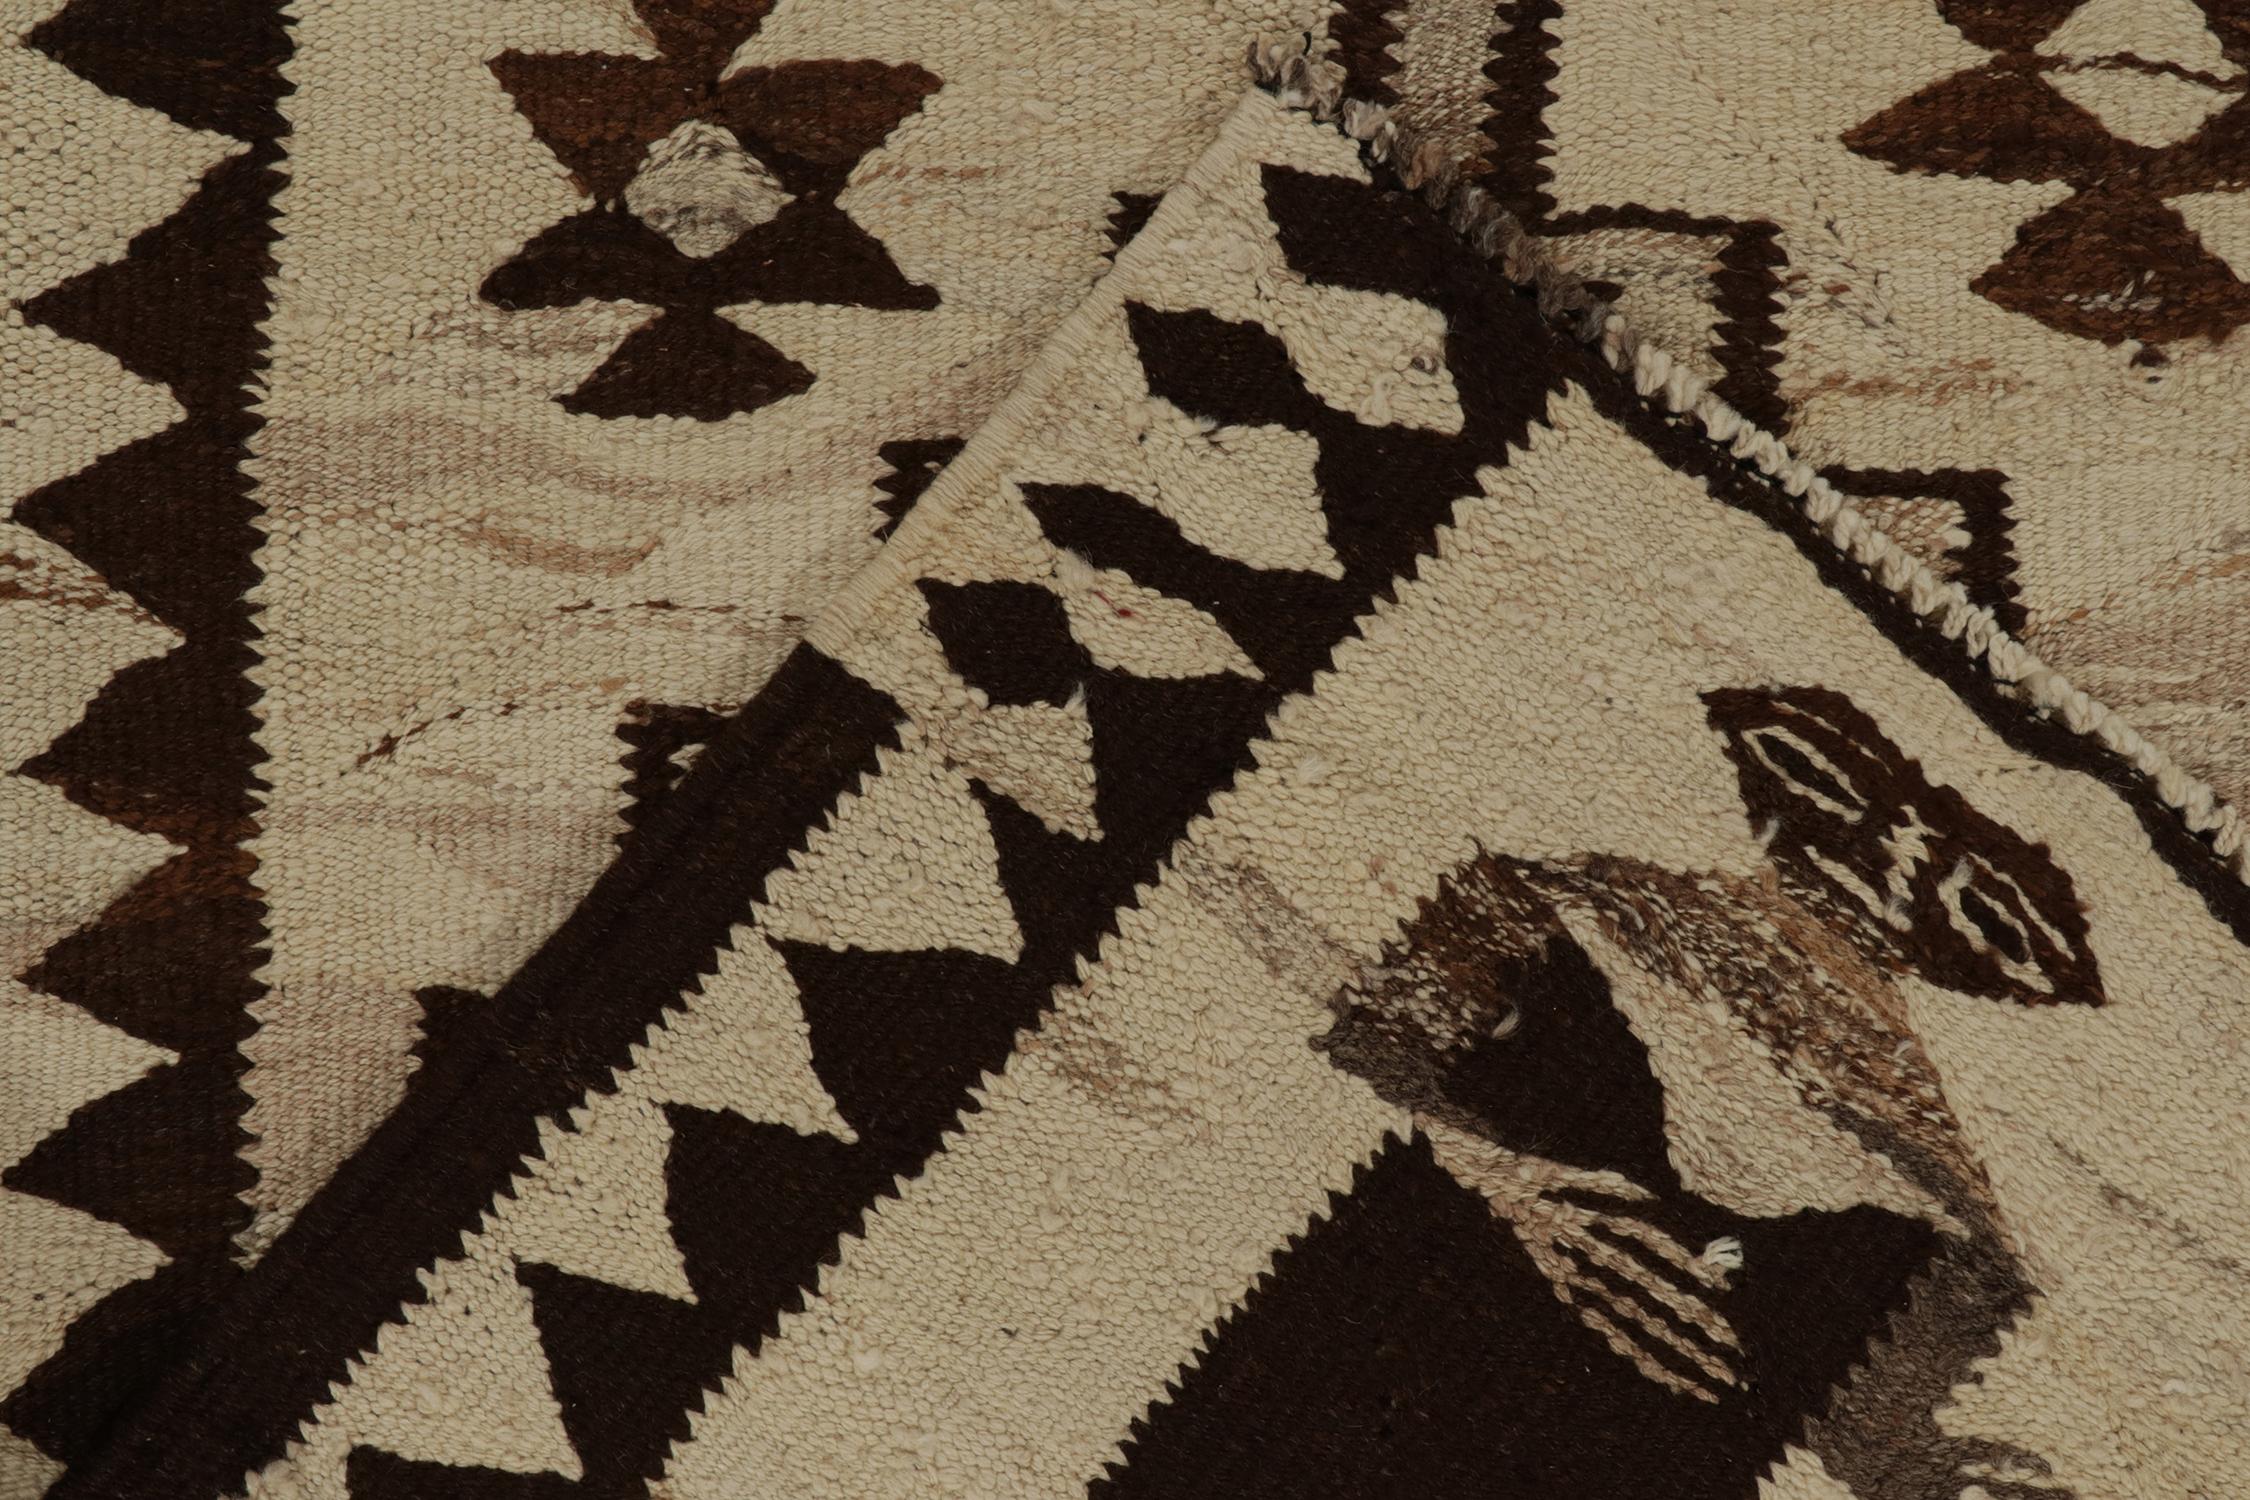 Wool Vintage Kilim Runner in Beige-Brown Tribal PictorialsPattern by Rug & Kilim For Sale